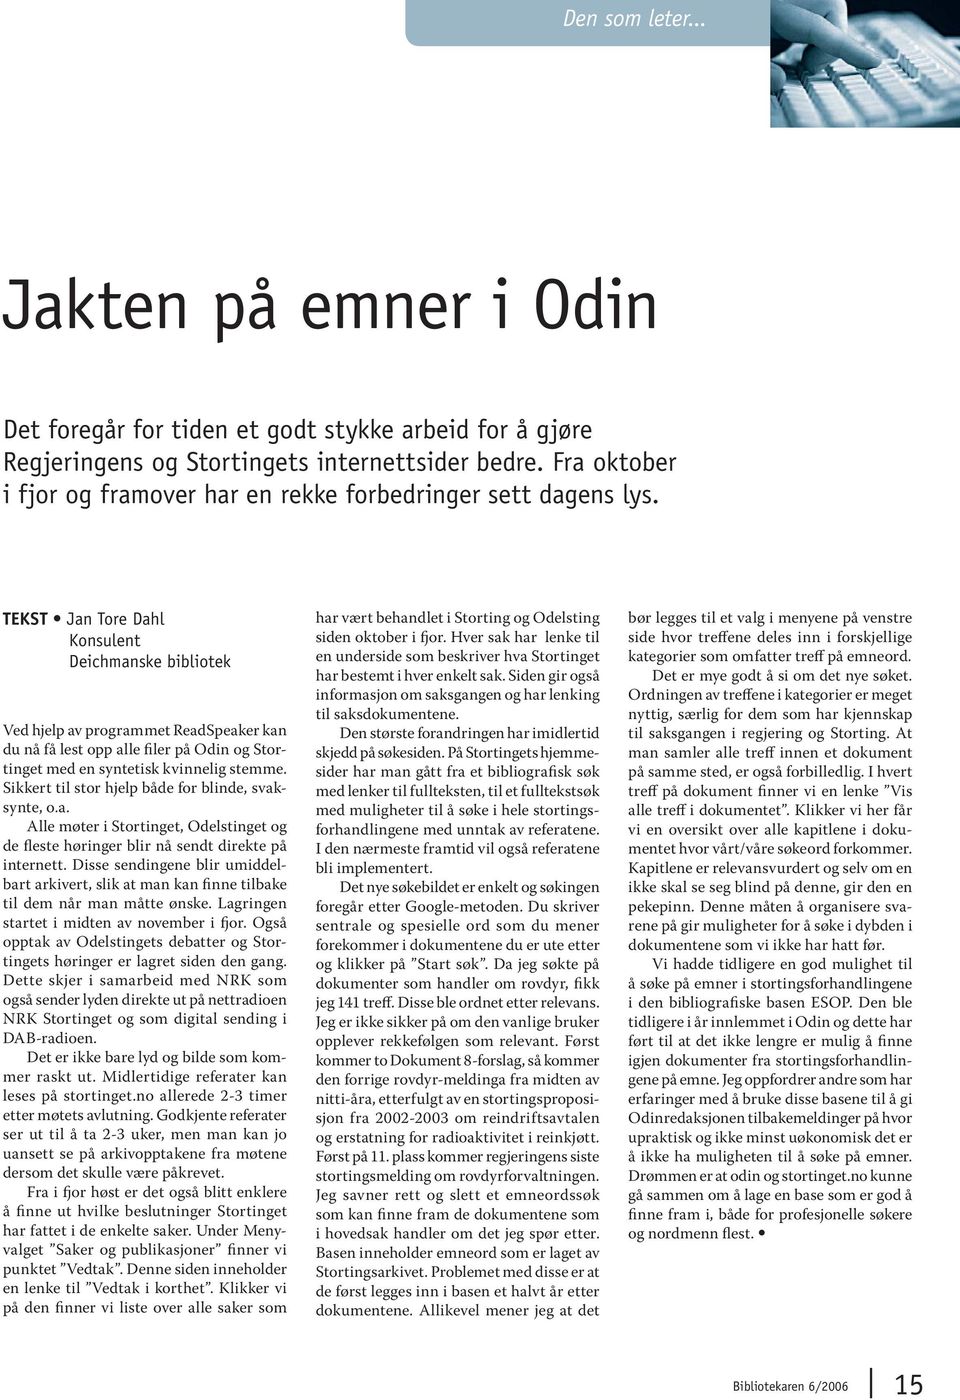 TEKST Jan Tore Dahl Konsulent Deichmanske bibliotek Ved hjelp av programmet ReadSpeaker kan du nå få lest opp alle filer på Odin og Stortinget med en syntetisk kvinnelig stemme.